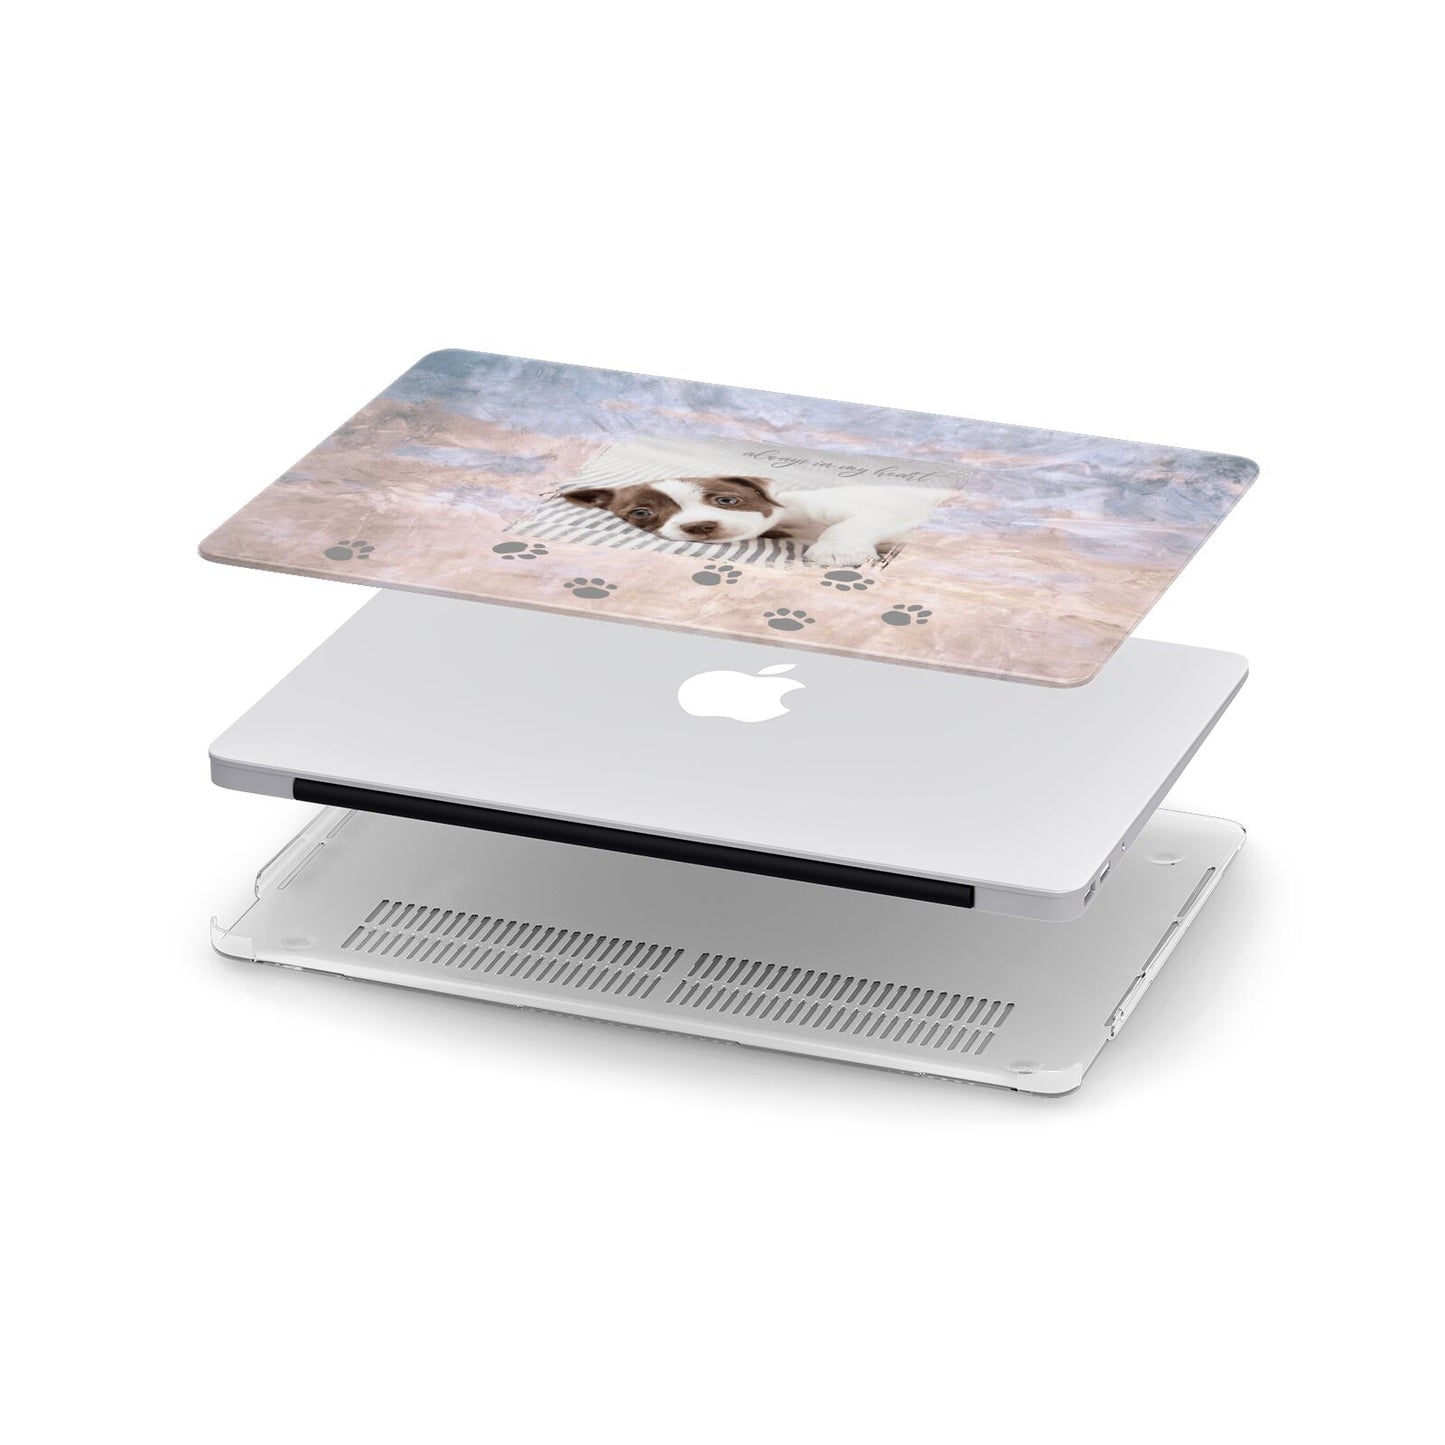 Pet Photo Personalised Apple MacBook Case in Detail